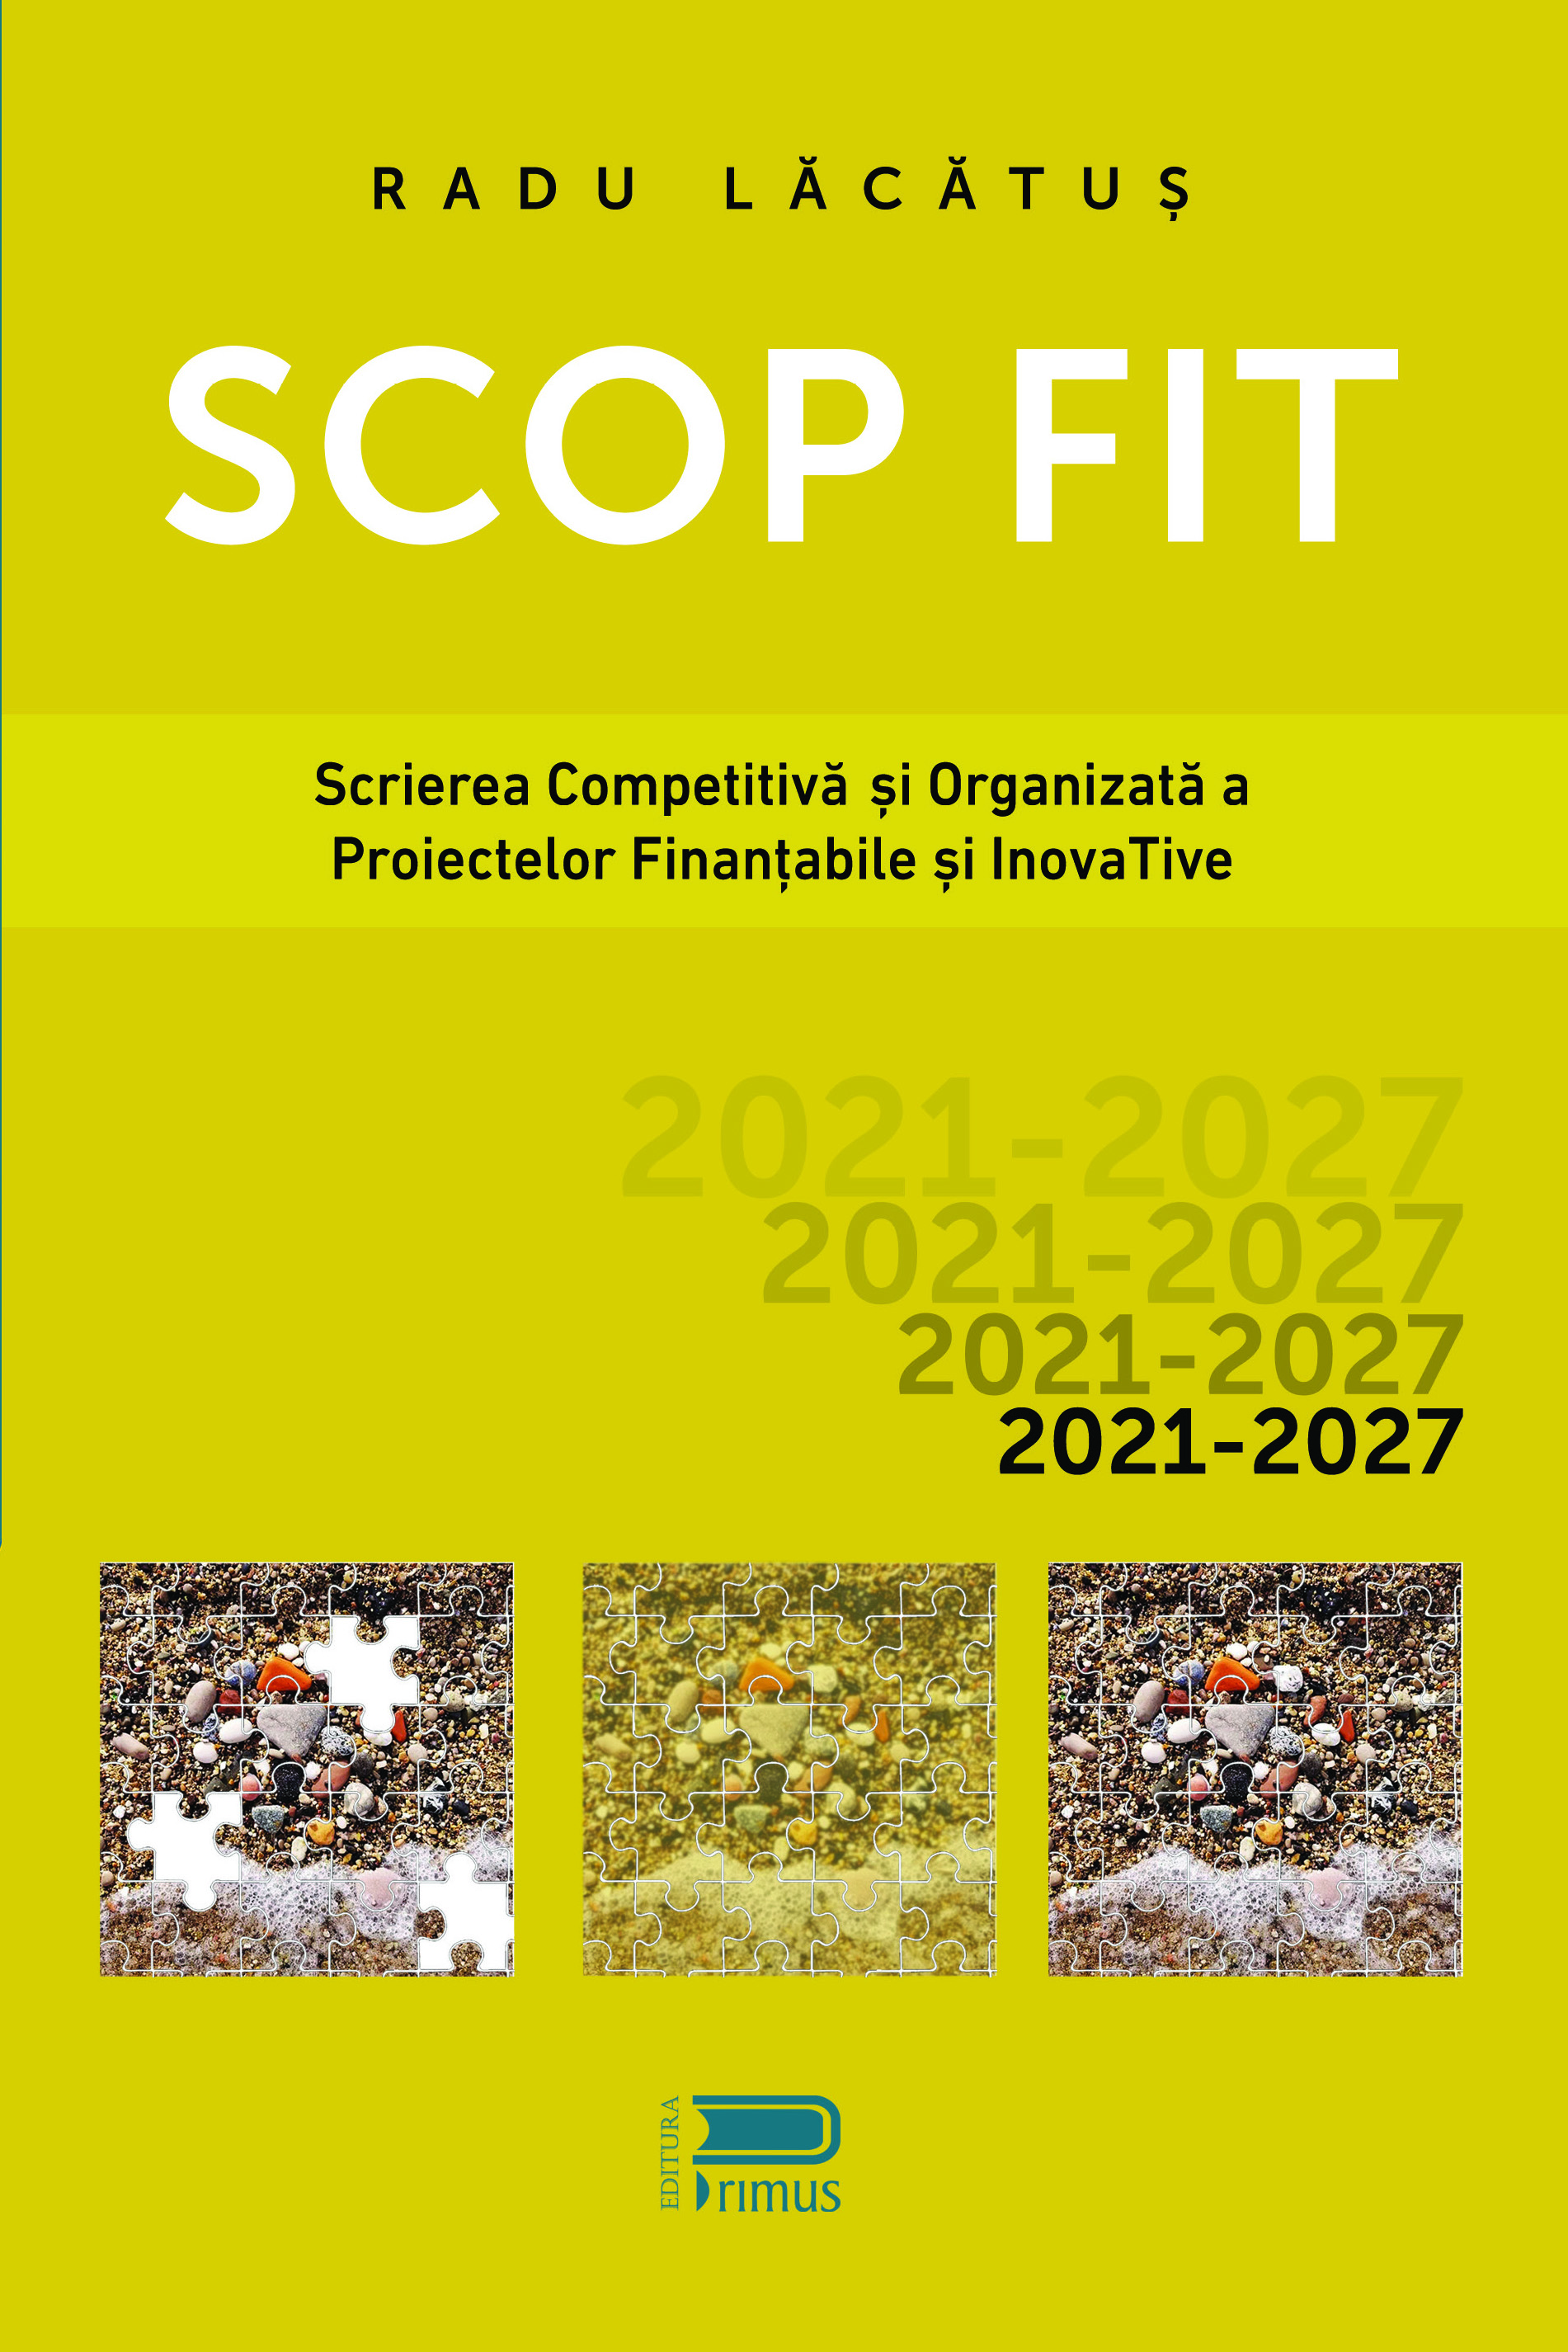 SCOP FIT: Scrierea competitiva si organizata a proiectelor finantabile si inovative | Radu Lacatus carturesti.ro